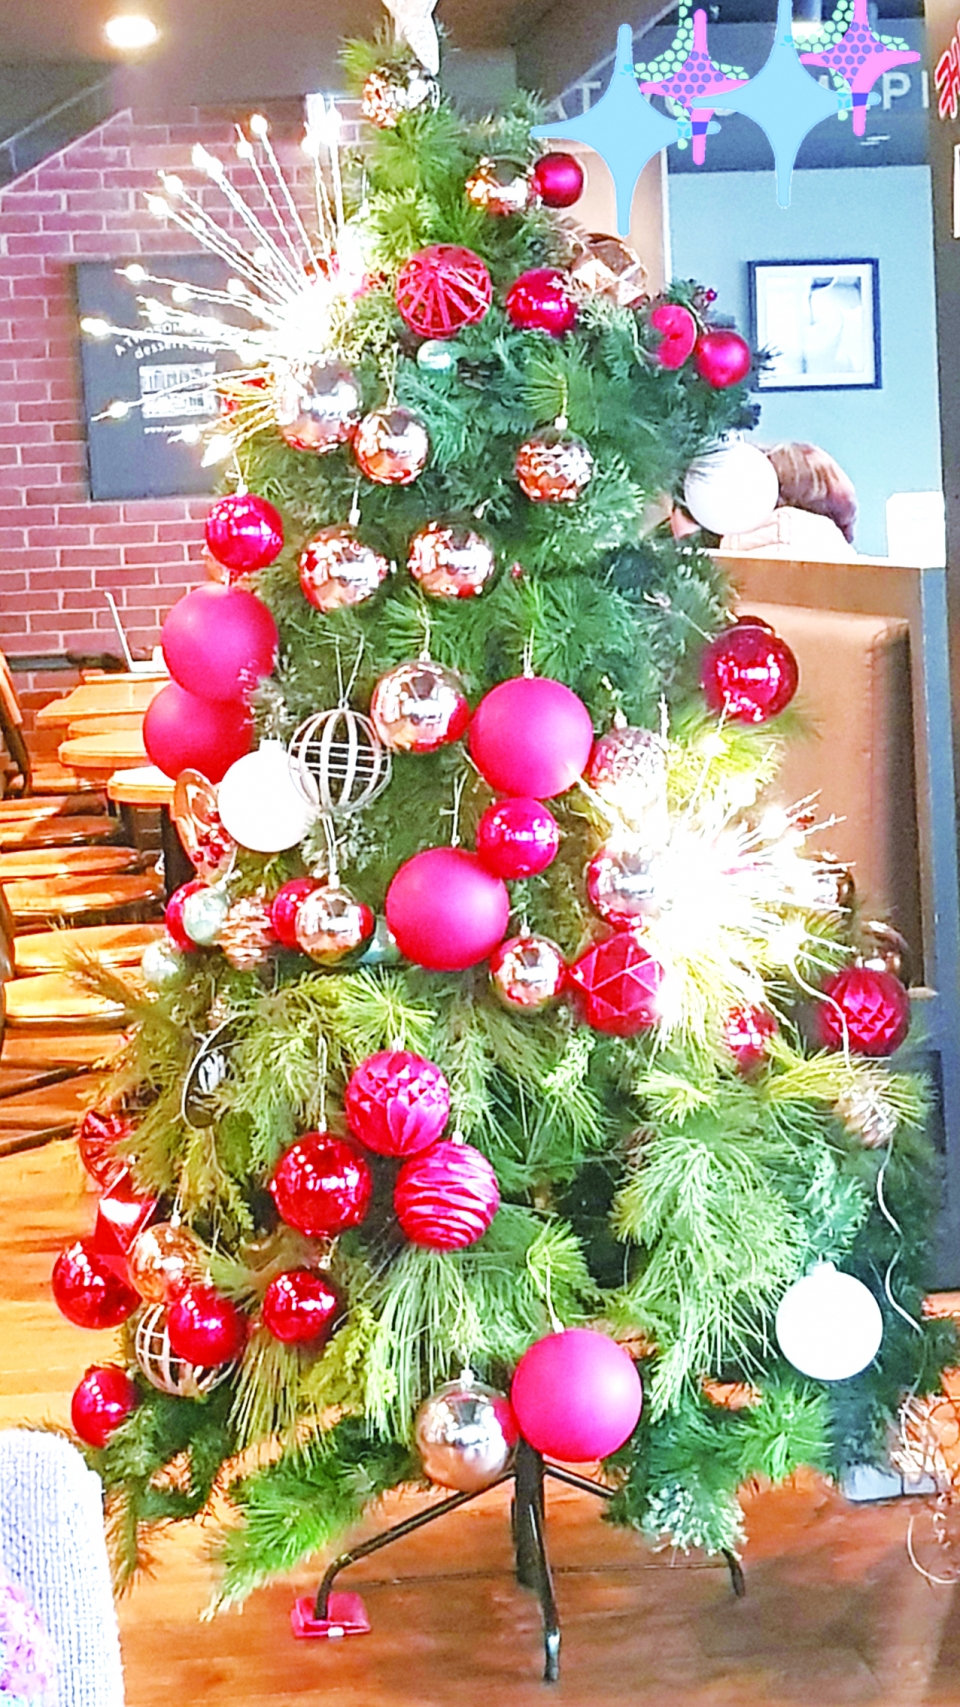 작은 카페에도 인조나무에 장식된 크리스마스트리가 빛난다